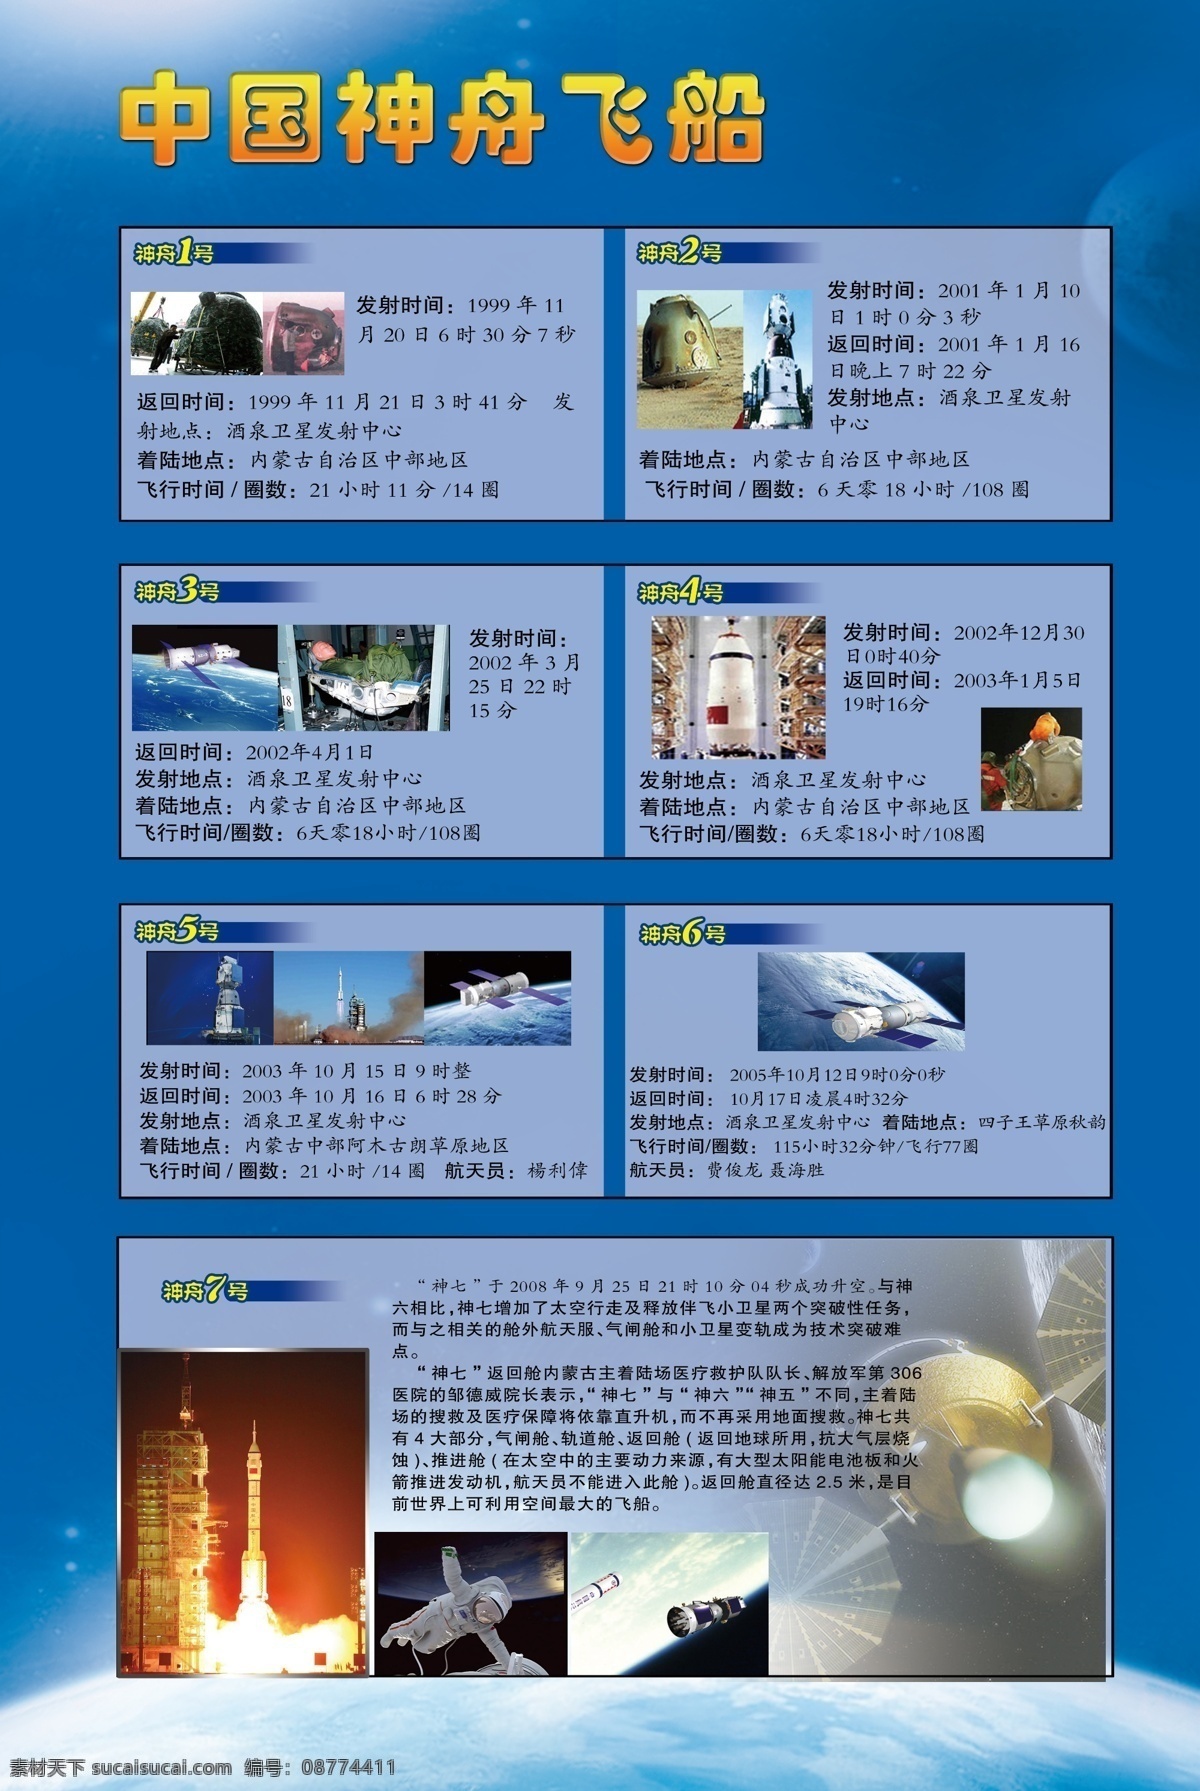 神舟飞船 中国神舟飞船 神舟7号 飞船 蓝背景 太空 地球 卫星 火箭 飞船发射 70pdi 展板模板 广告设计模板 源文件